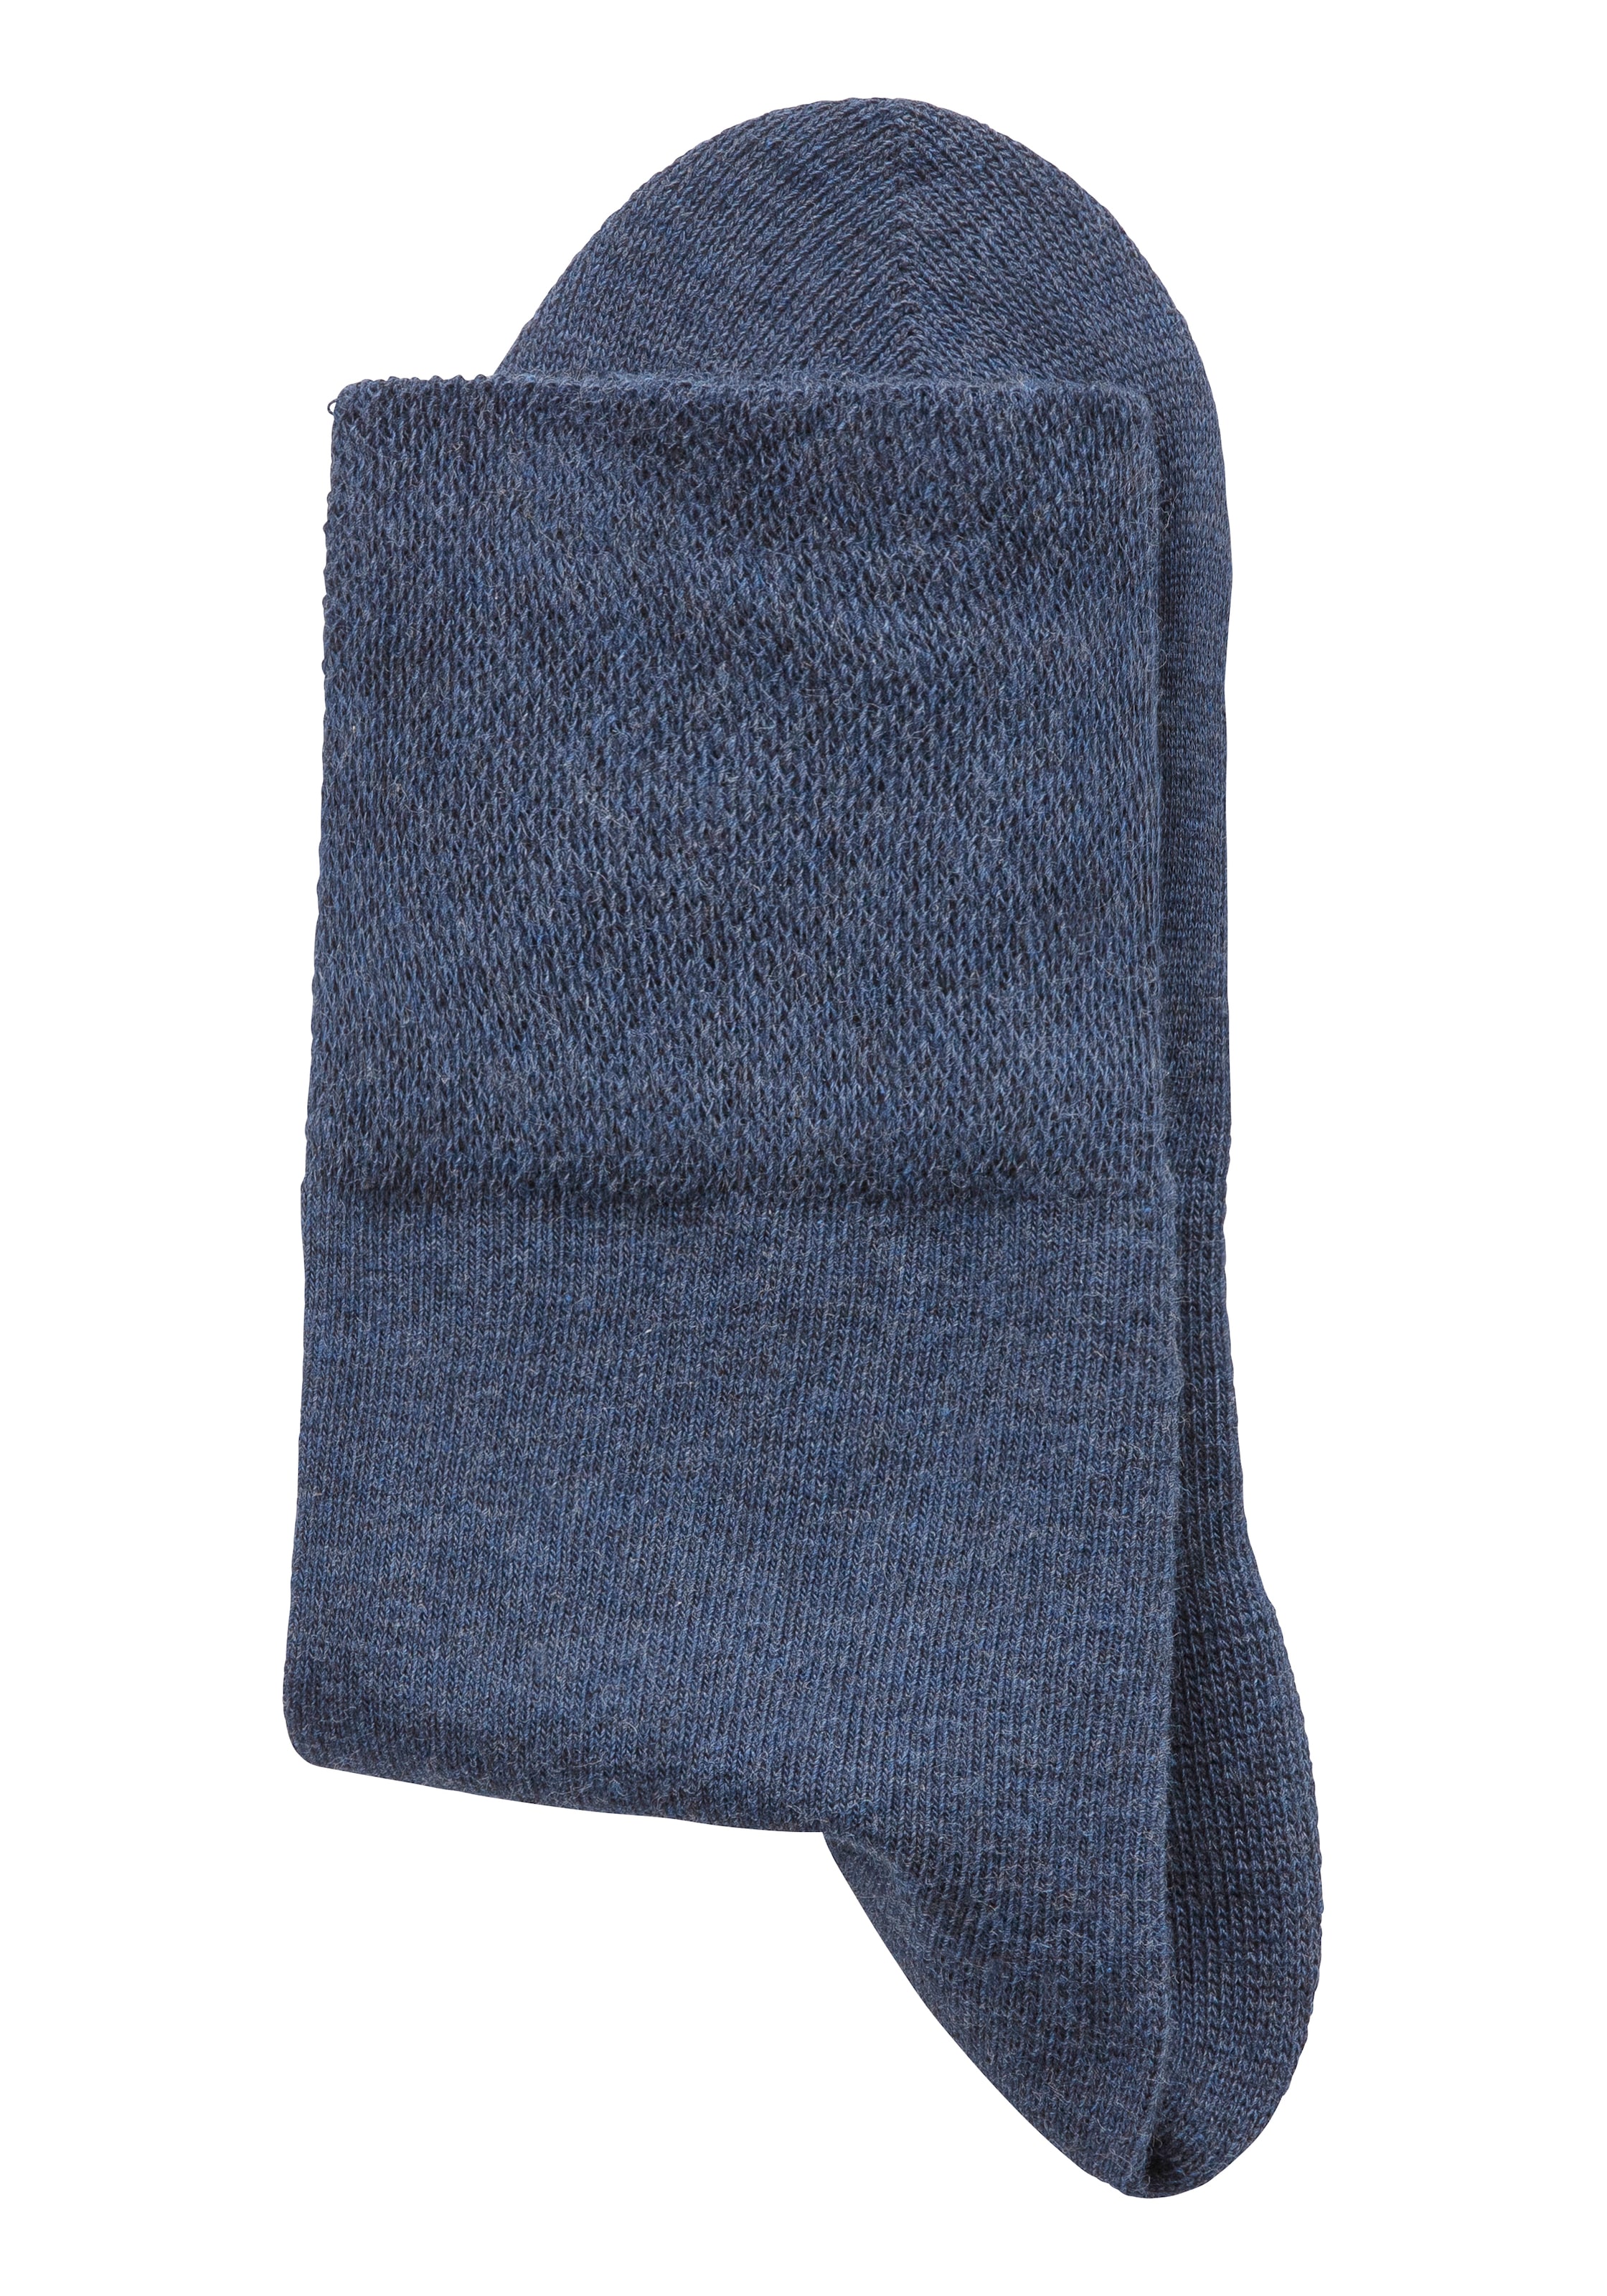 H.I.S Socken, (Set, 6 Paar), mit Komfortbund auch für Diabetiker geeignet  sans frais de livraison sur